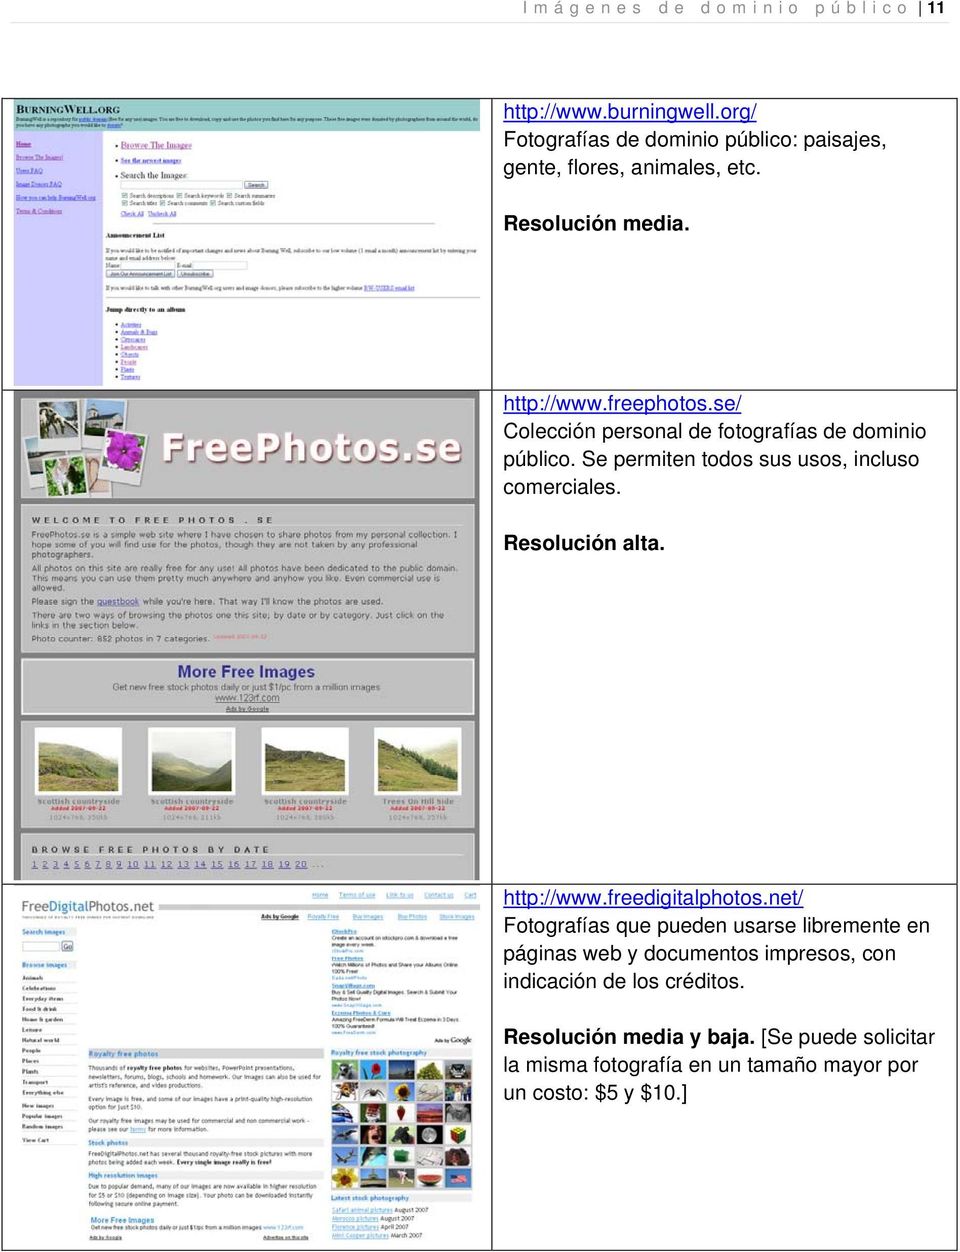 se/ Colección personal de fotografías de dominio público. Se permiten todos sus usos, incluso comerciales. http://www.